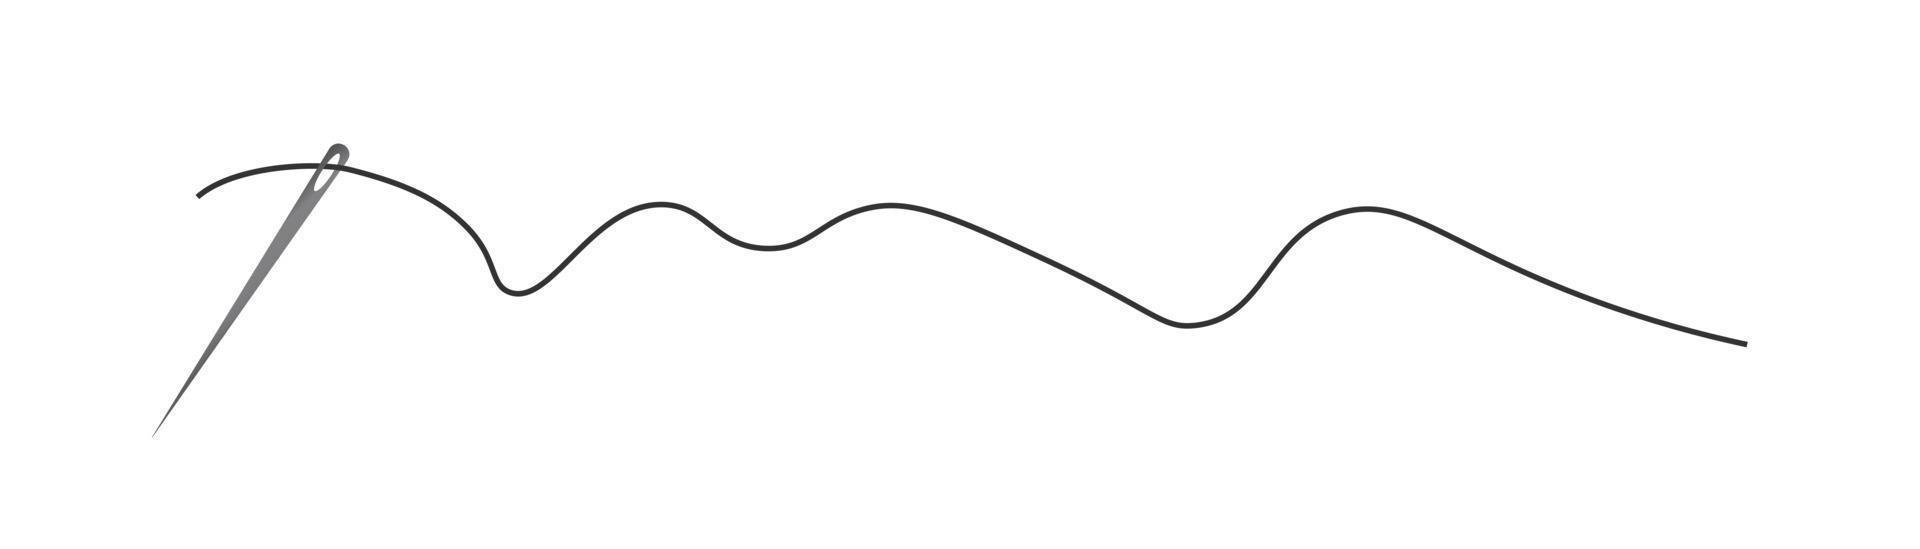 Symbolvektor für Nadel- und Fadensilhouetten. schneiderlogo mit nadelsymbol und gebogenem faden, schneider- und schuhmacherhandwerkzeug, nähelement. dunkle Nadel und Faden. vektor